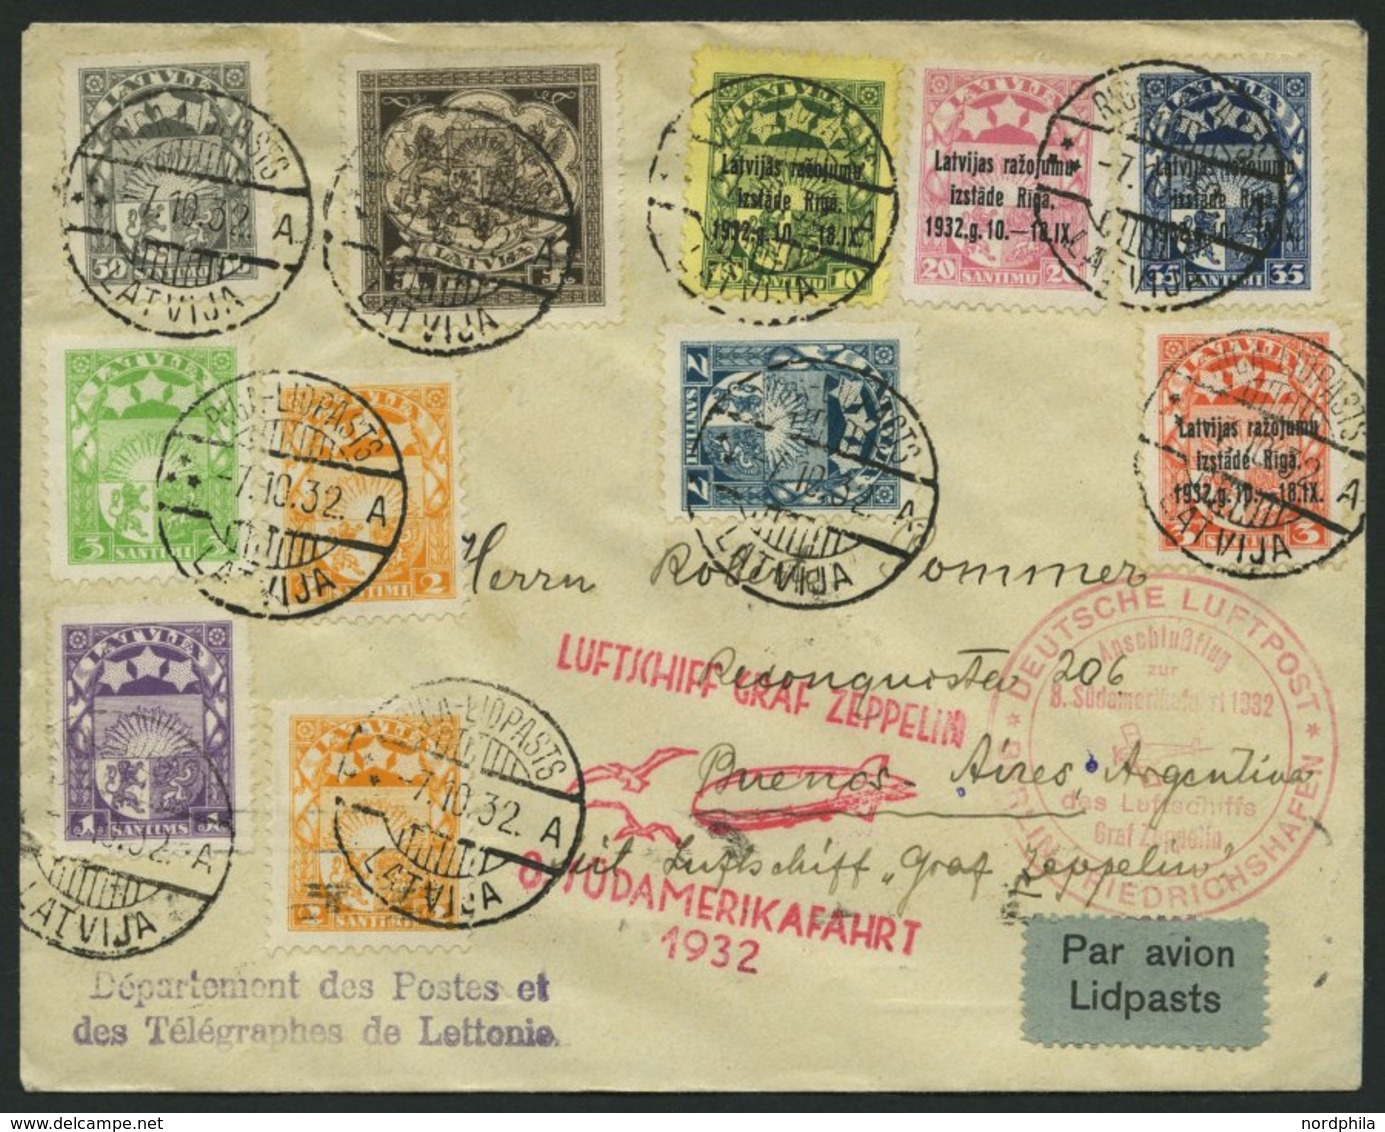 ZULEITUNGSPOST 189B BRIEF, Lettland: 1932, 8. Südamerikafahrt, Anschlußflug Ab Berlin, Prachtbrief - Luft- Und Zeppelinpost